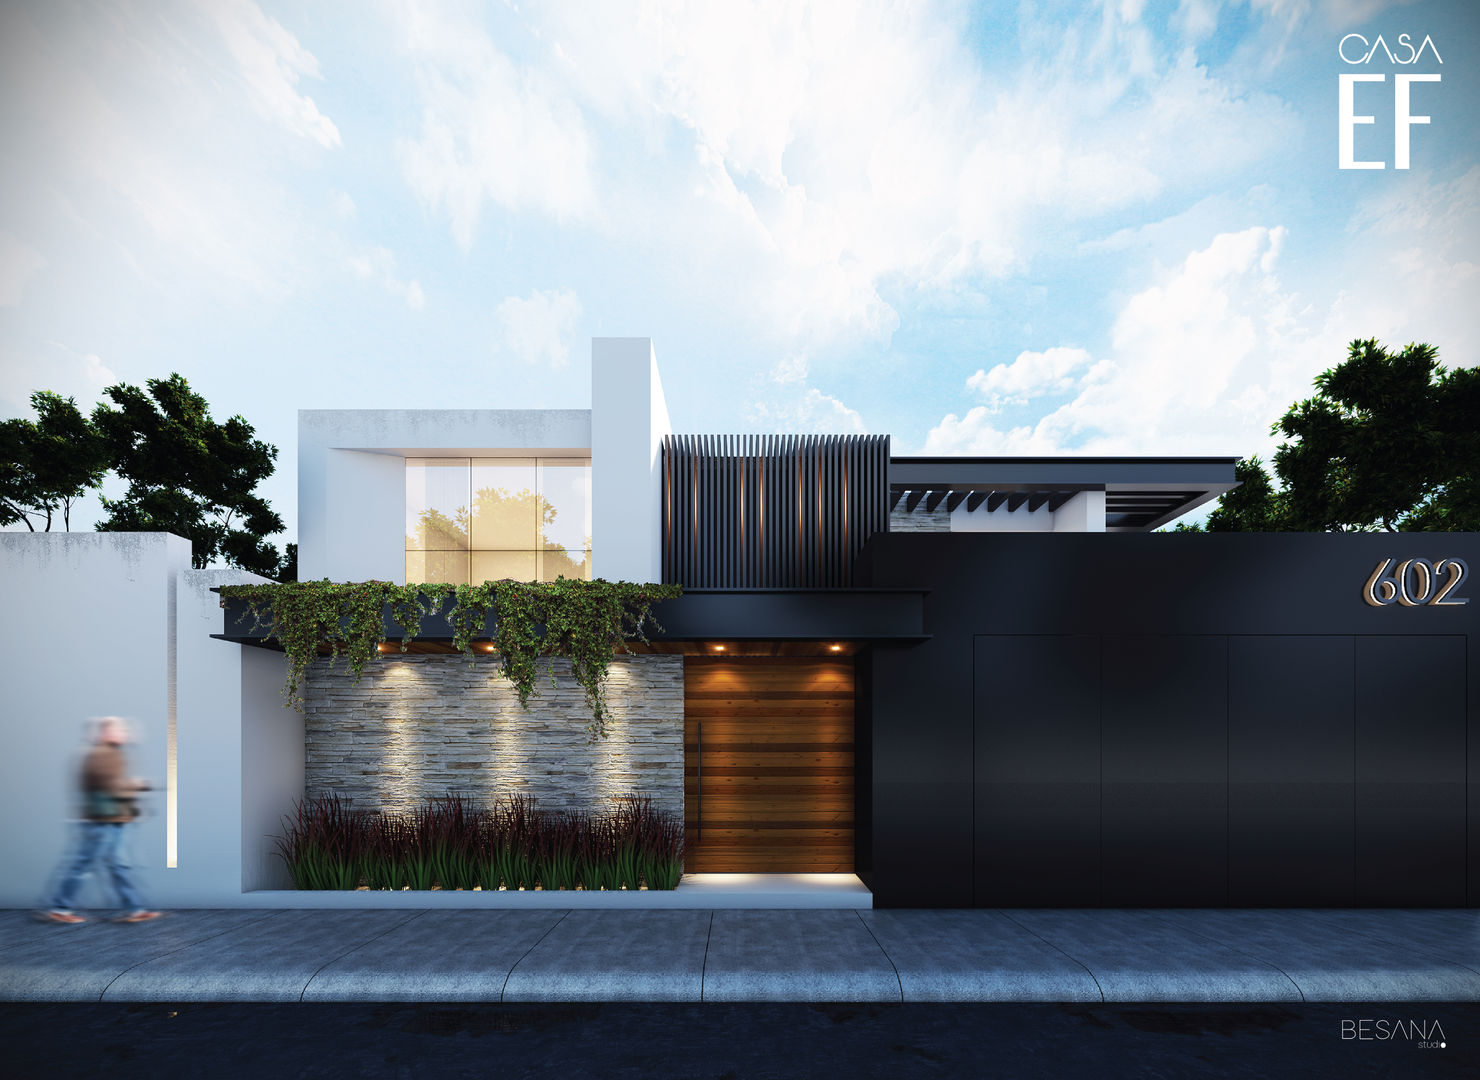 Propuesta de fachada exterior 1 Besana Studio Casas de estilo minimalista